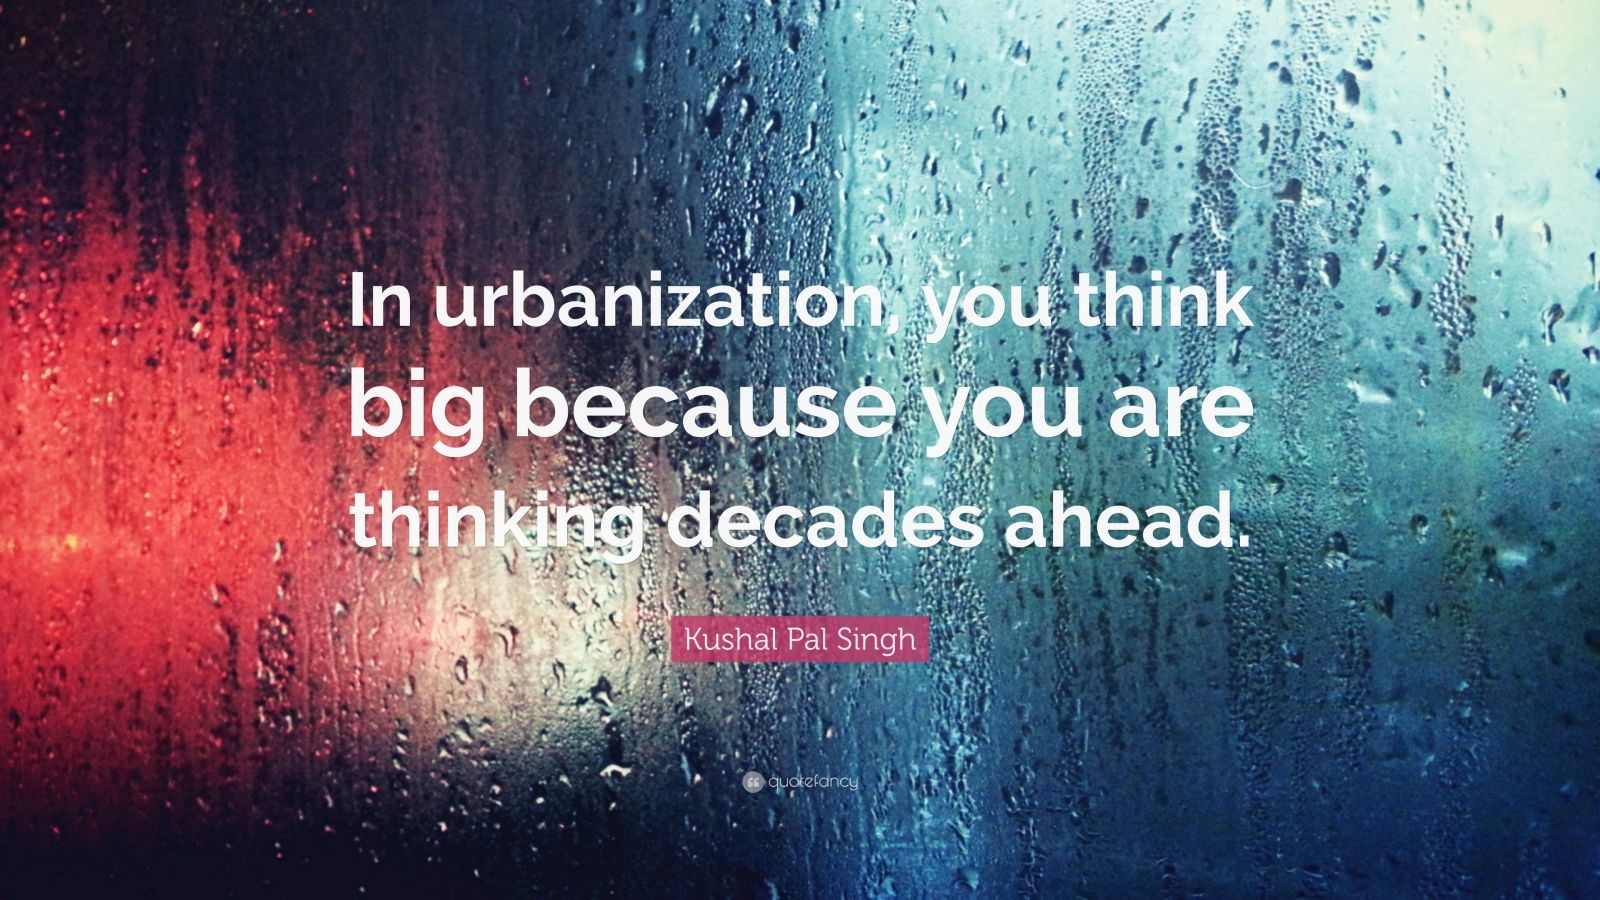 Urbanization quotes